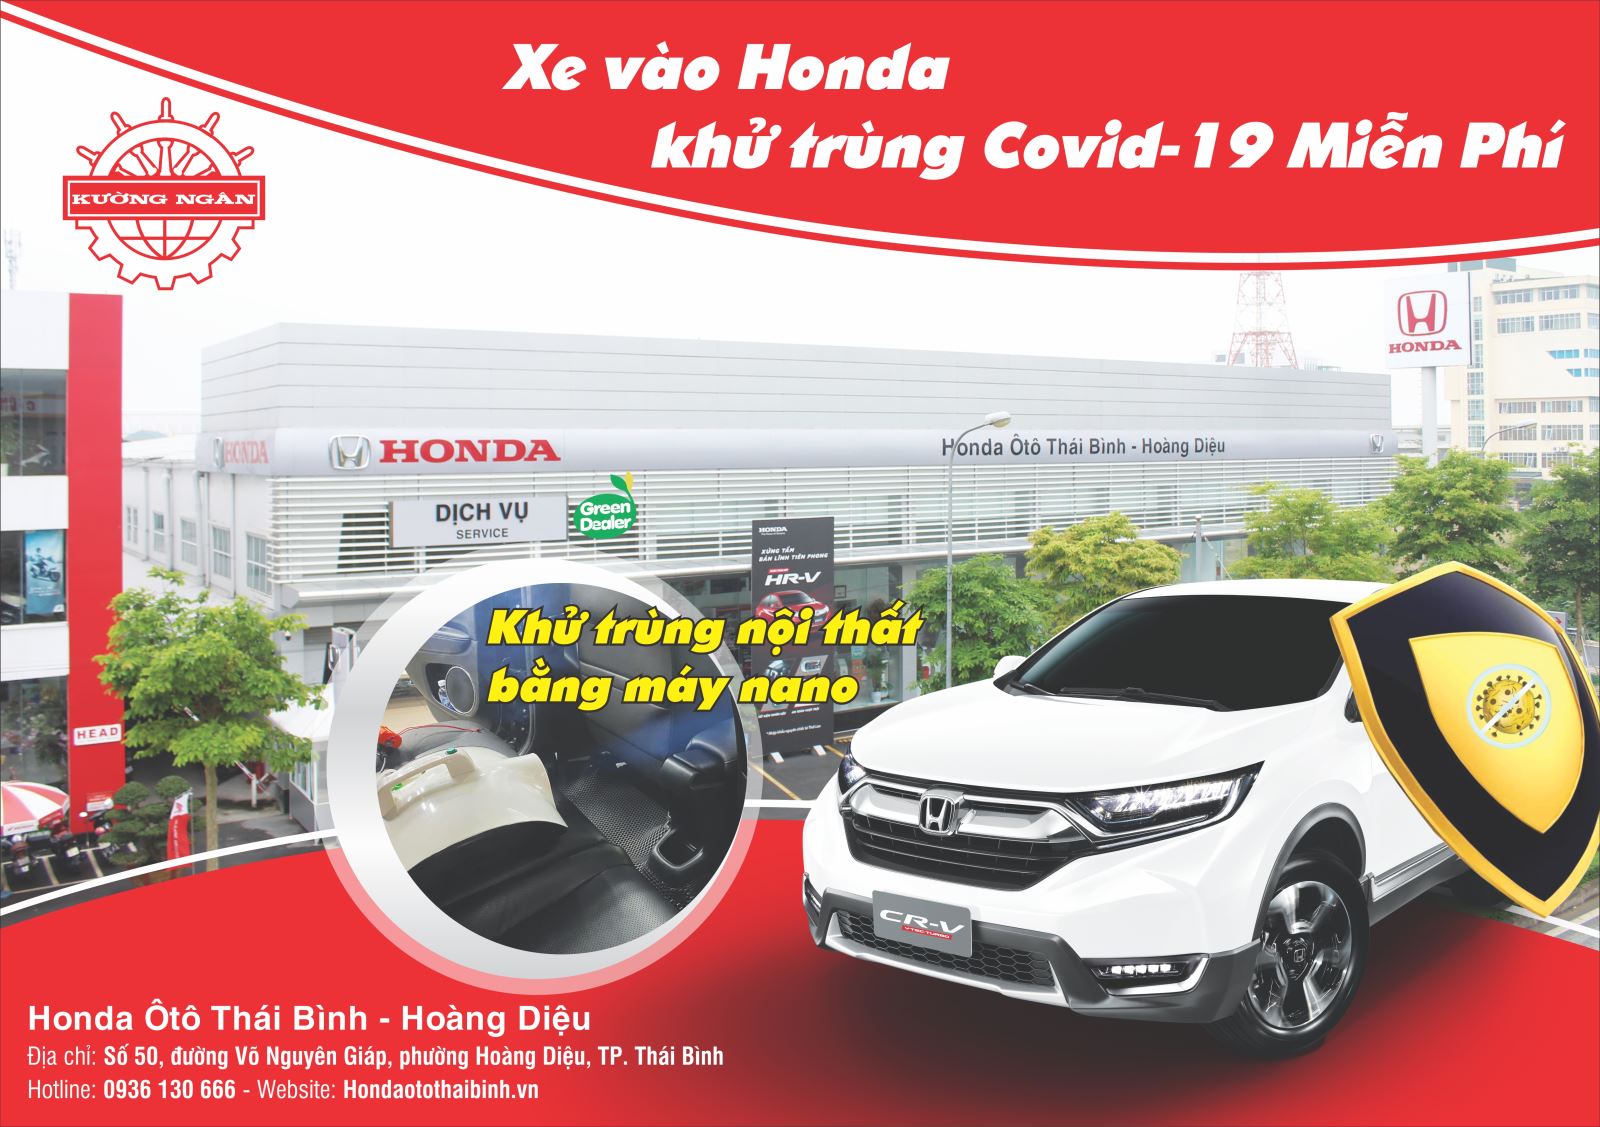 Chương trình khử trùng tất cả các xe đến làm Dịch vụ tại Honda Ôtô Thái Bình-Hoàng Diệu